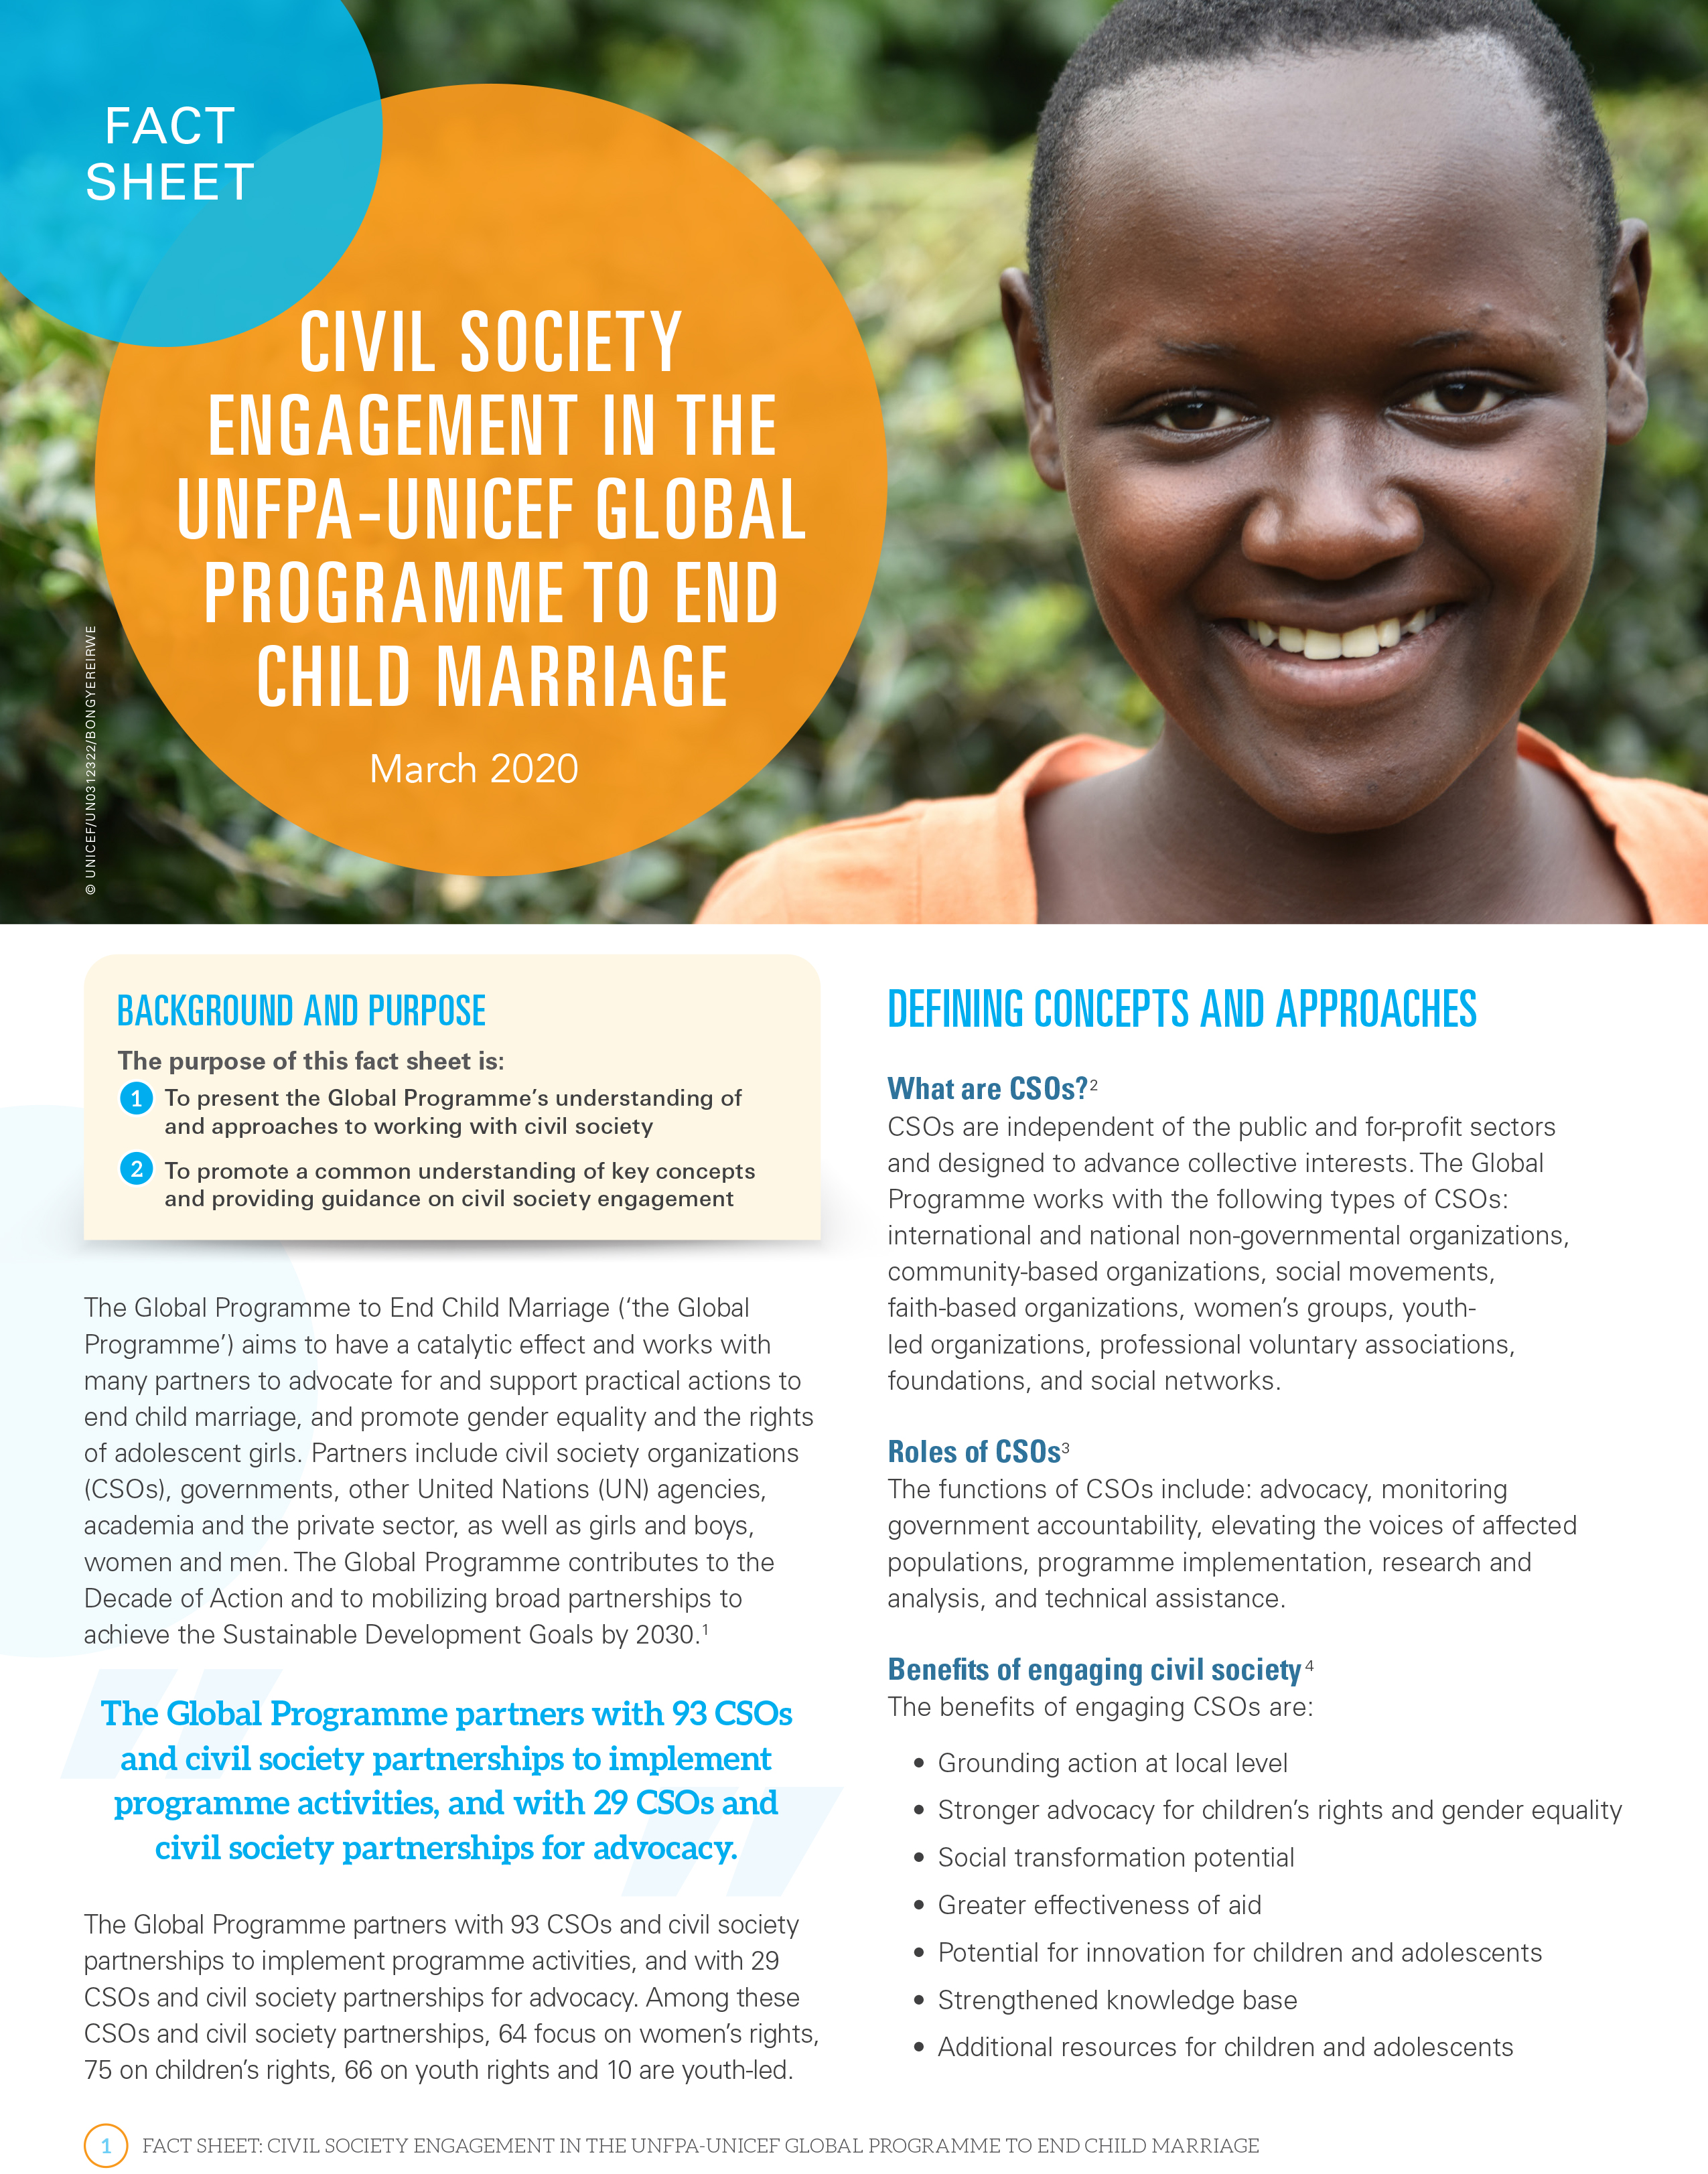 Ficha técnica sobre la participación de la sociedad civil en el Programa Mundial de UNFPA-UNICEF para Poner Fin al Matrimonio Infantil